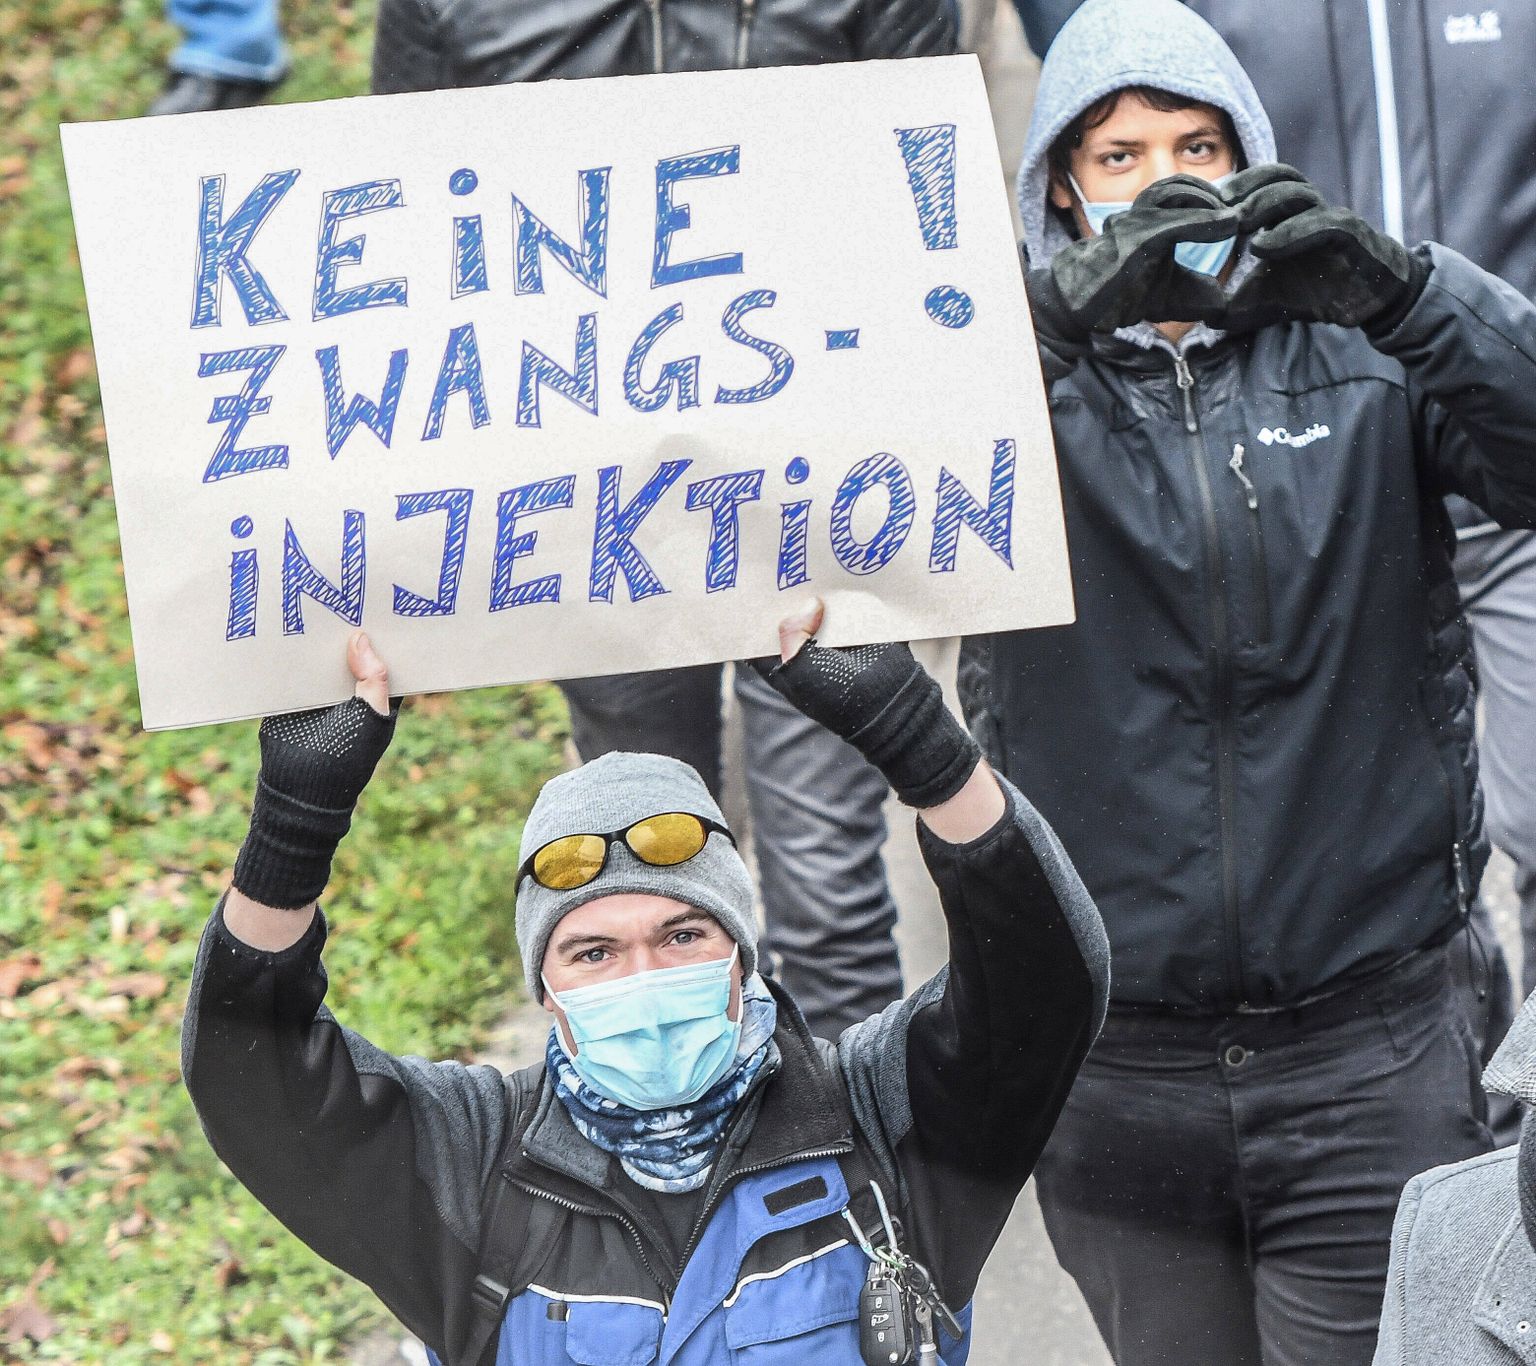 Koroonasüstide ja -poliitika vastane protest Saksamaal  Freiburgis möödunud aastal